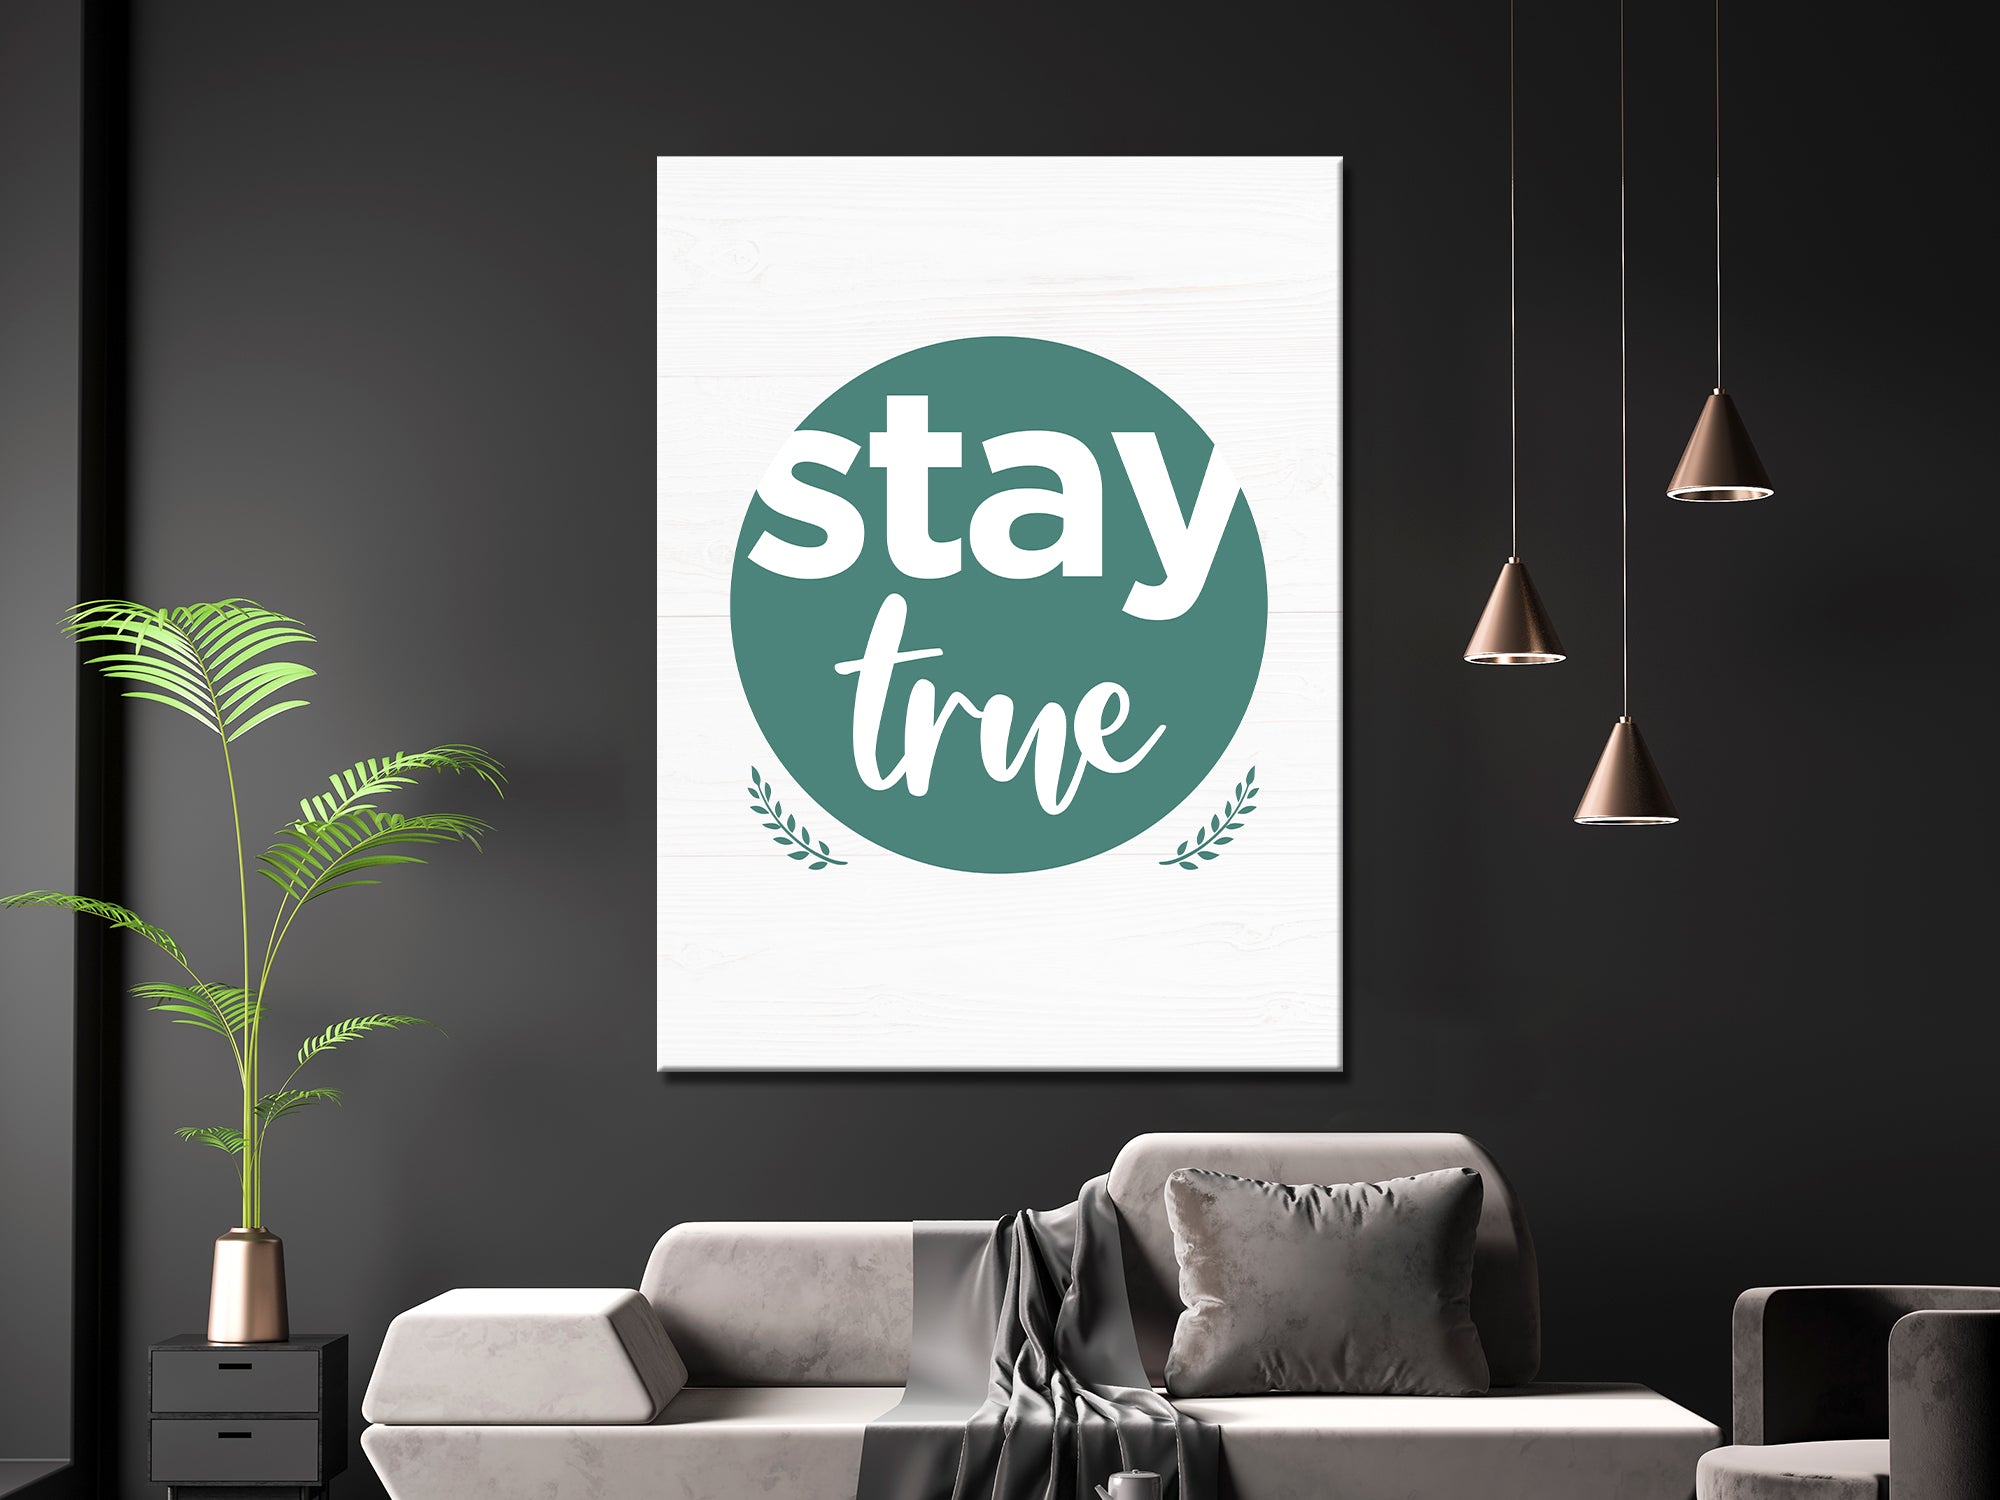 Stay True - Inspiring - Living Room Canvas Wall Art